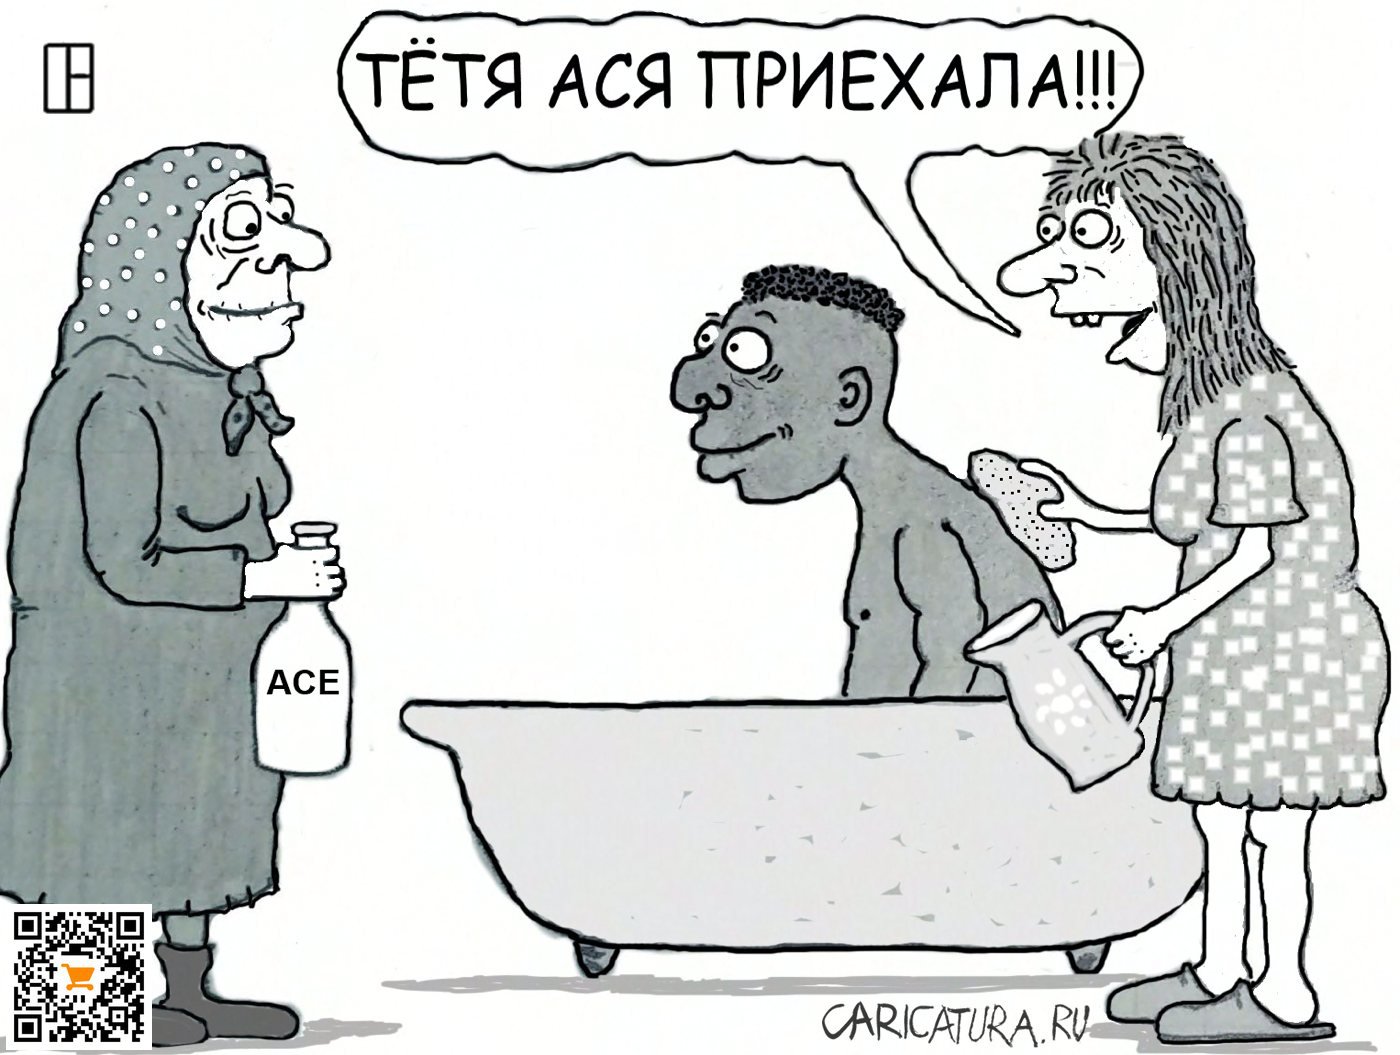 Карикатура "Реклама 90-х", Олег Тамбовцев